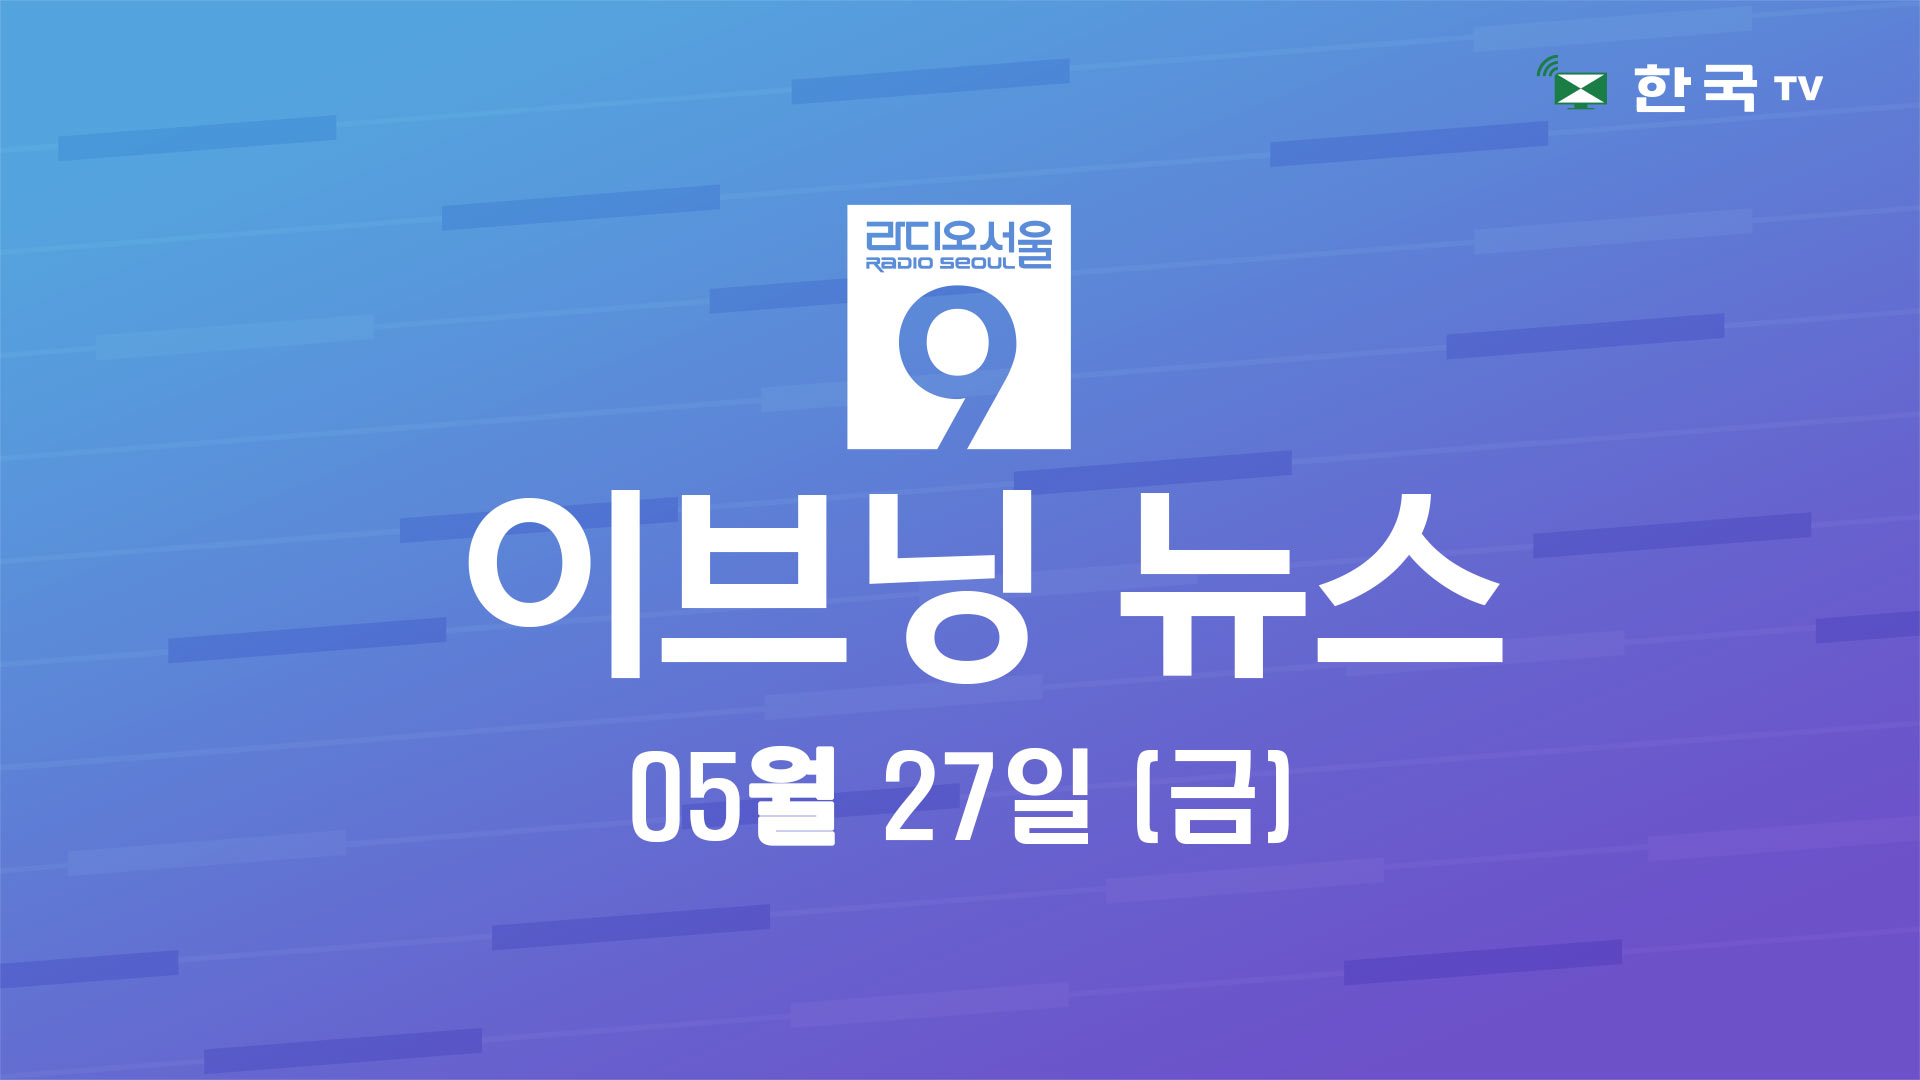 아시안 운영 식당 지원금 준다(05.27.2022) 한국TV 이브닝 뉴스